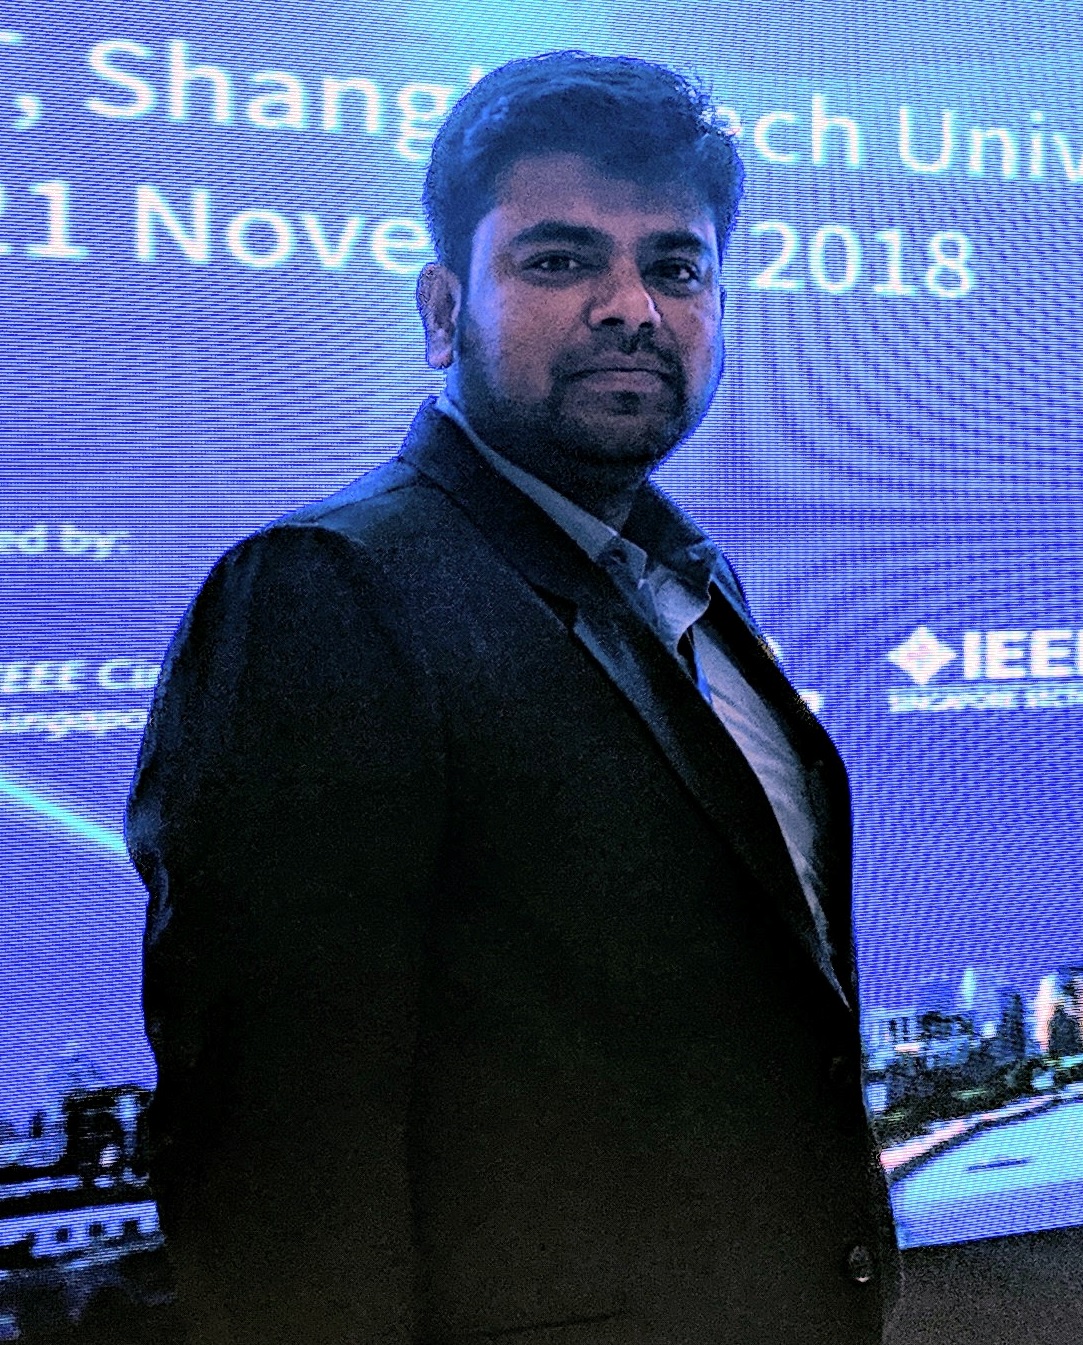 Dr. Nikhil Agrawal